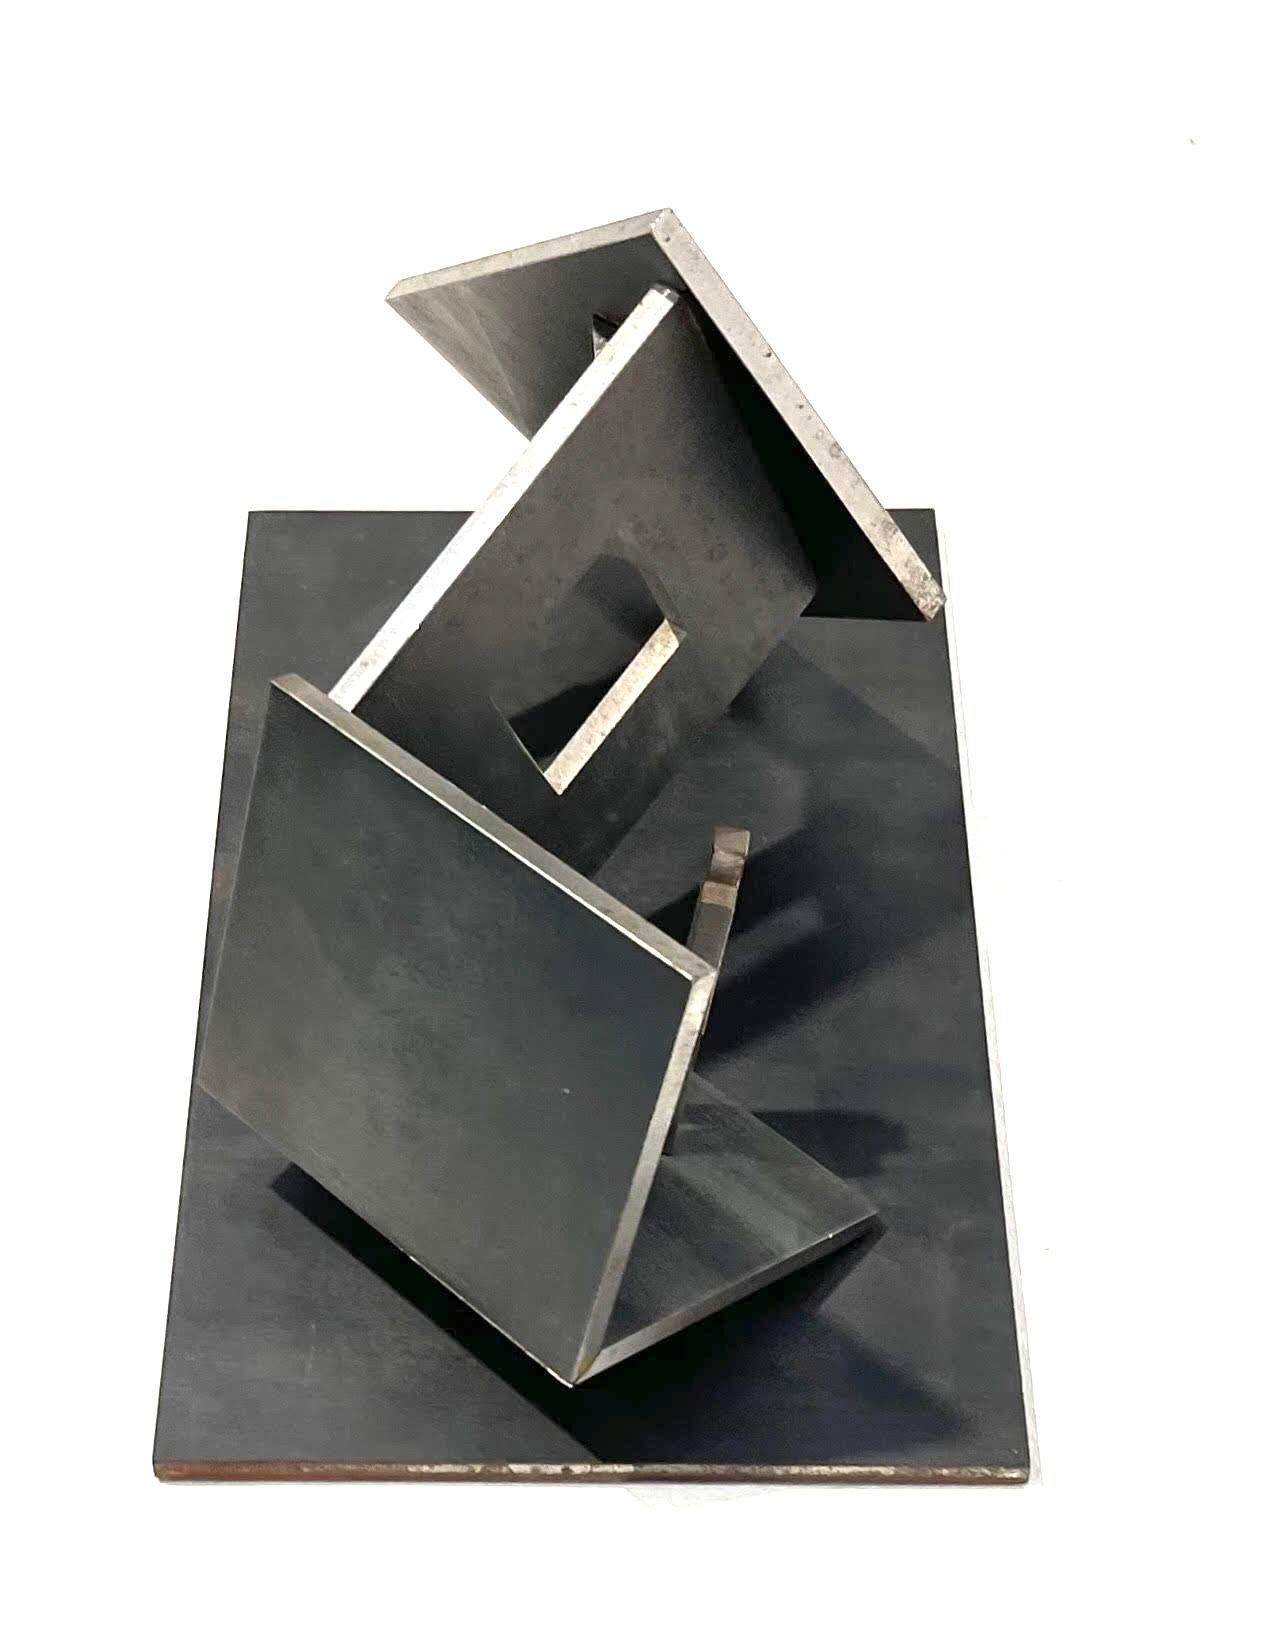 Buky Schwartz 
Haus in Bewegung, 1986
Geschweißter Stahl
10 1/2 × 6 1/4 × 6 1/2 Zoll
Dies ist ein einzigartiges Werk
Die Skulptur ist ein auf dem Kopf stehendes Haus mit zwei menschlichen Figuren. Das geniale Design wird deutlich, wenn man die